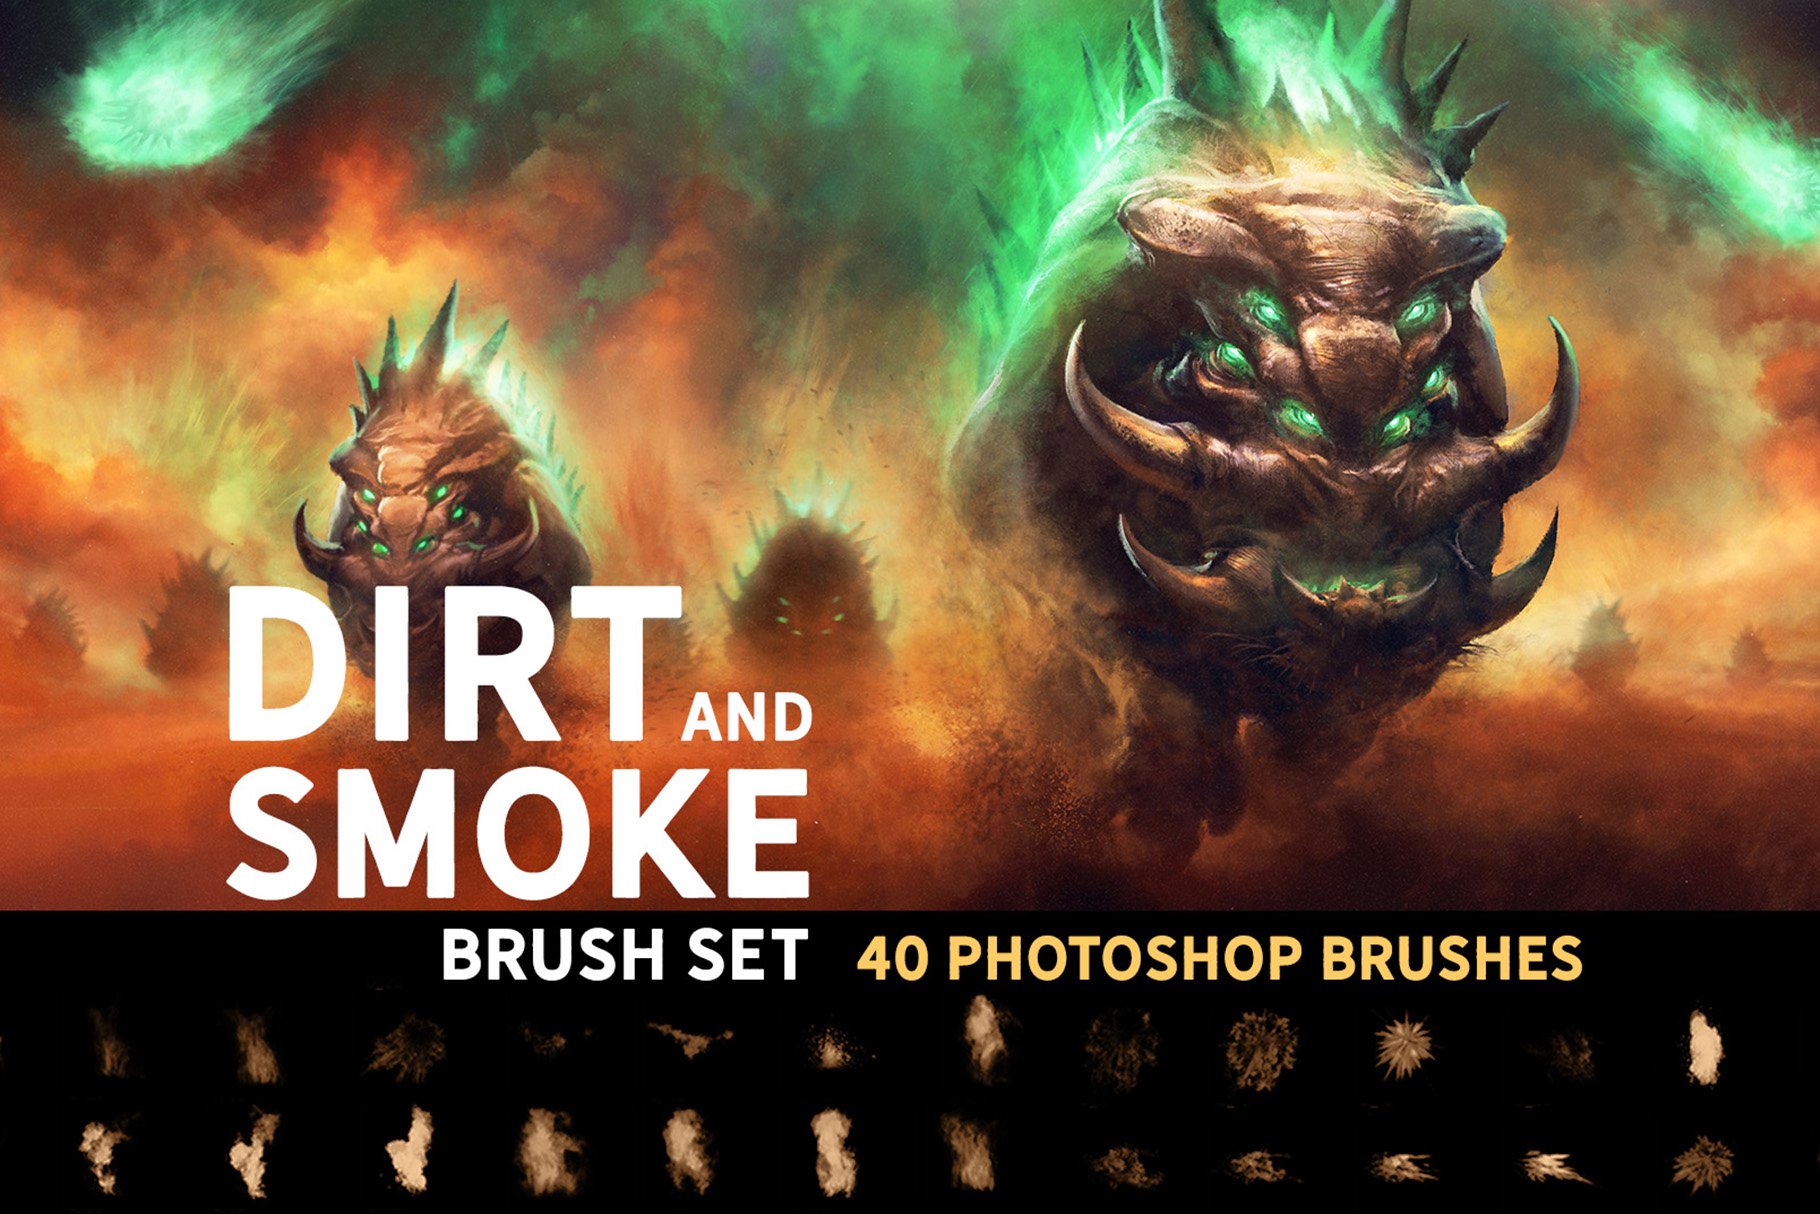 Dirt and Smoke Brush Setcover image.